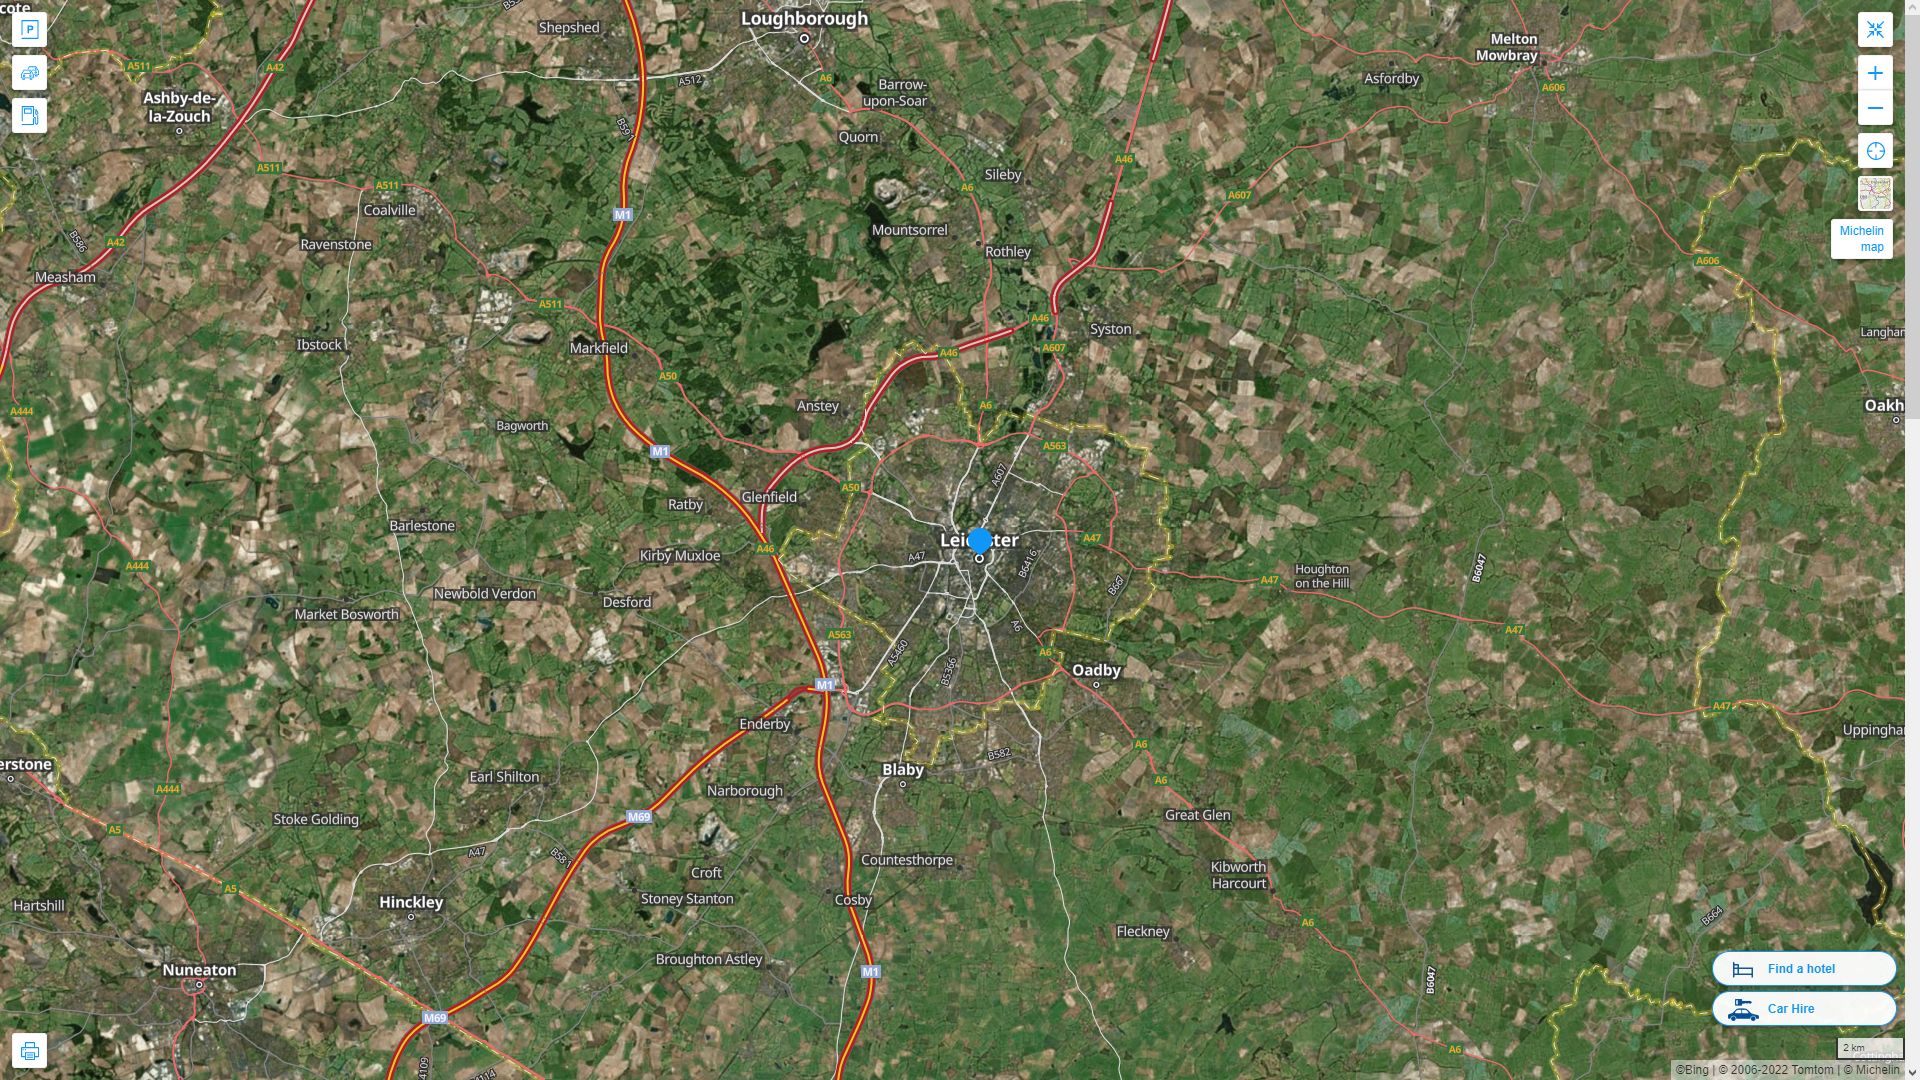 Leicester Royaume Uni Autoroute et carte routiere avec vue satellite